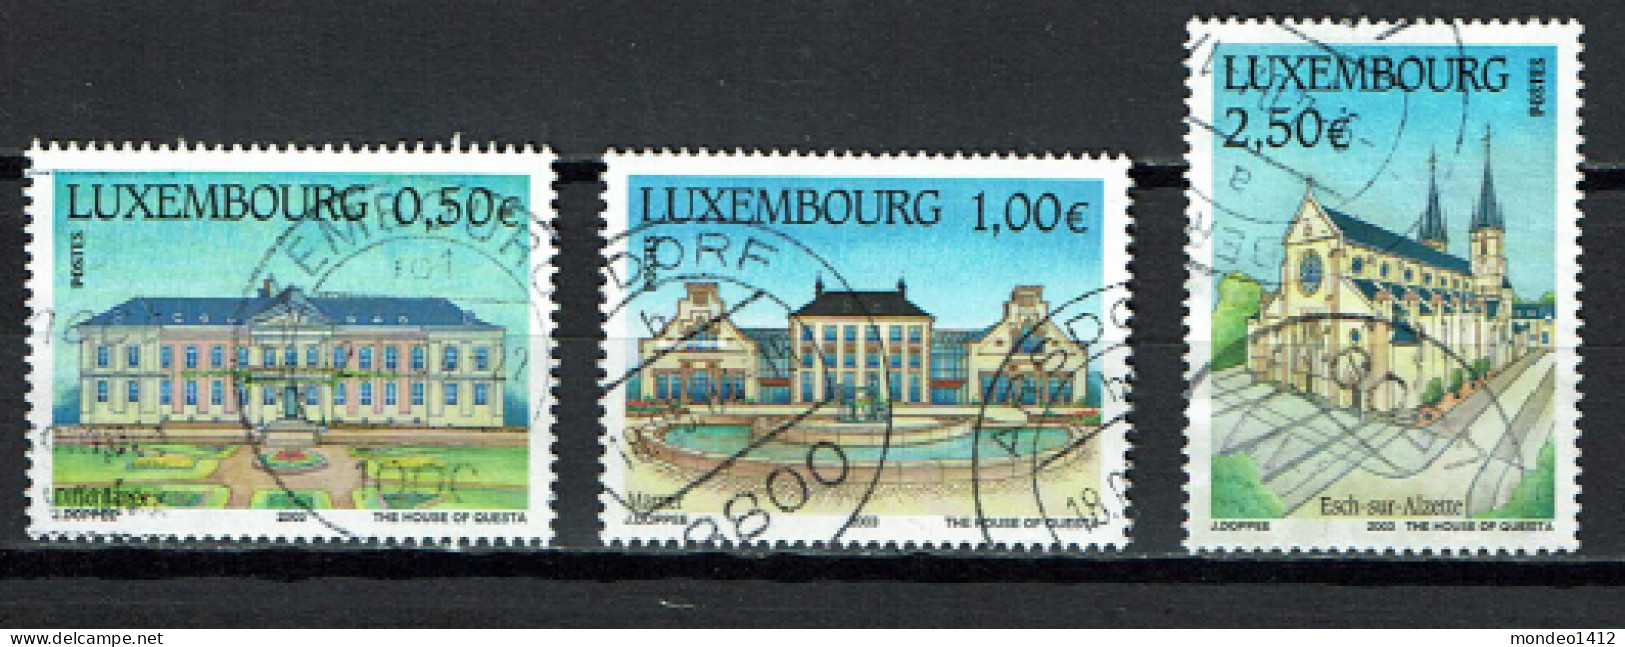 Luxembourg 2003 - YT 1551/1553 - Tourisme, Tourism - Maison De Soins, Château De Mamer, Église Saint-Joseph - Used Stamps